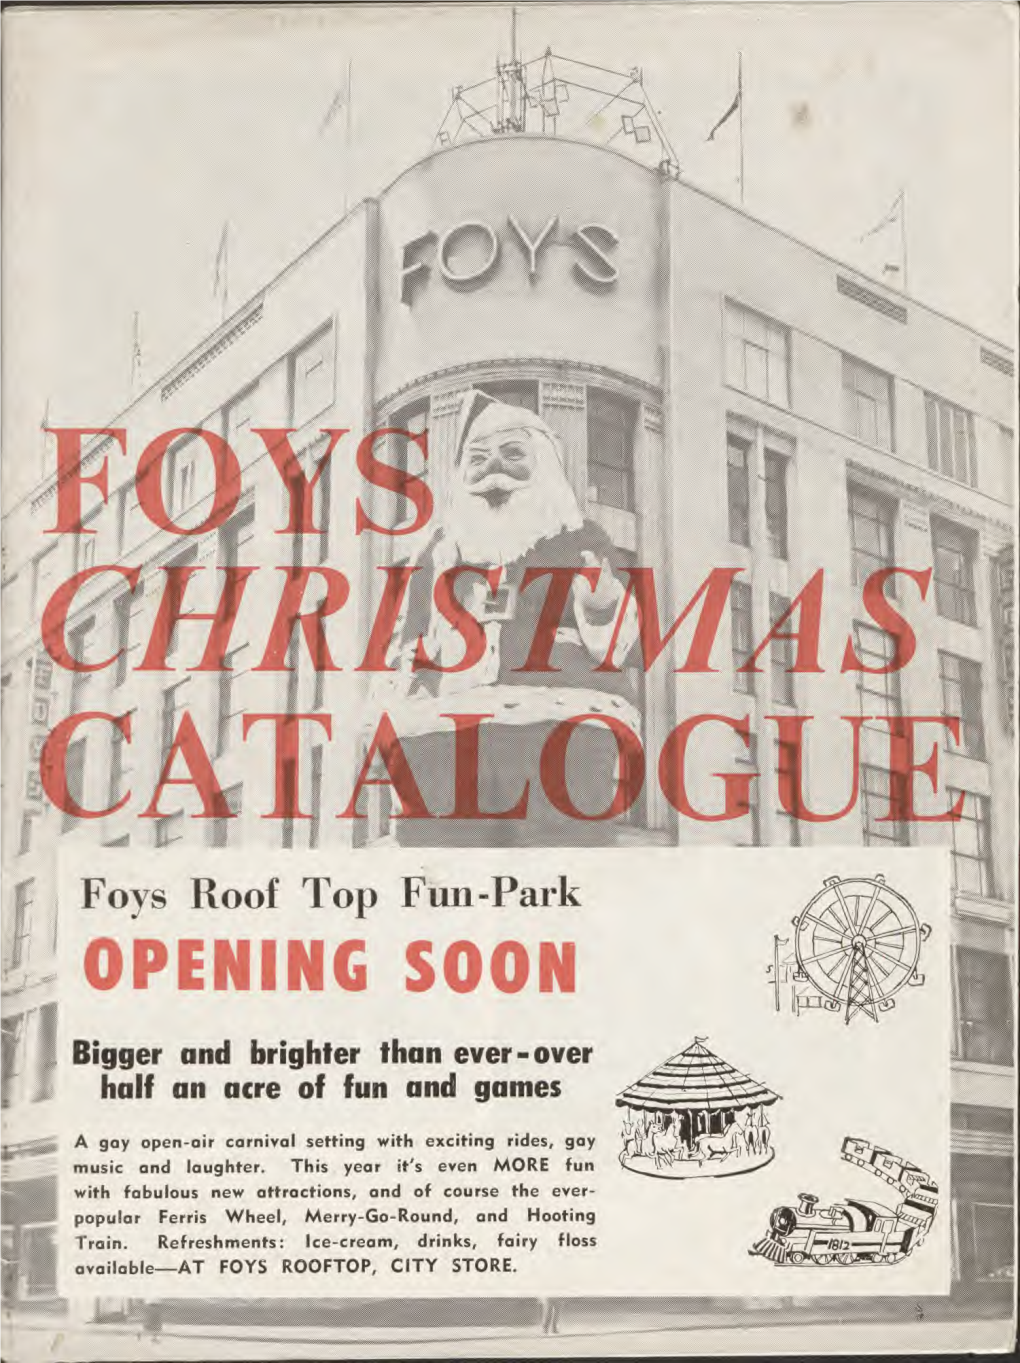 Foy's Christmas Catalogue